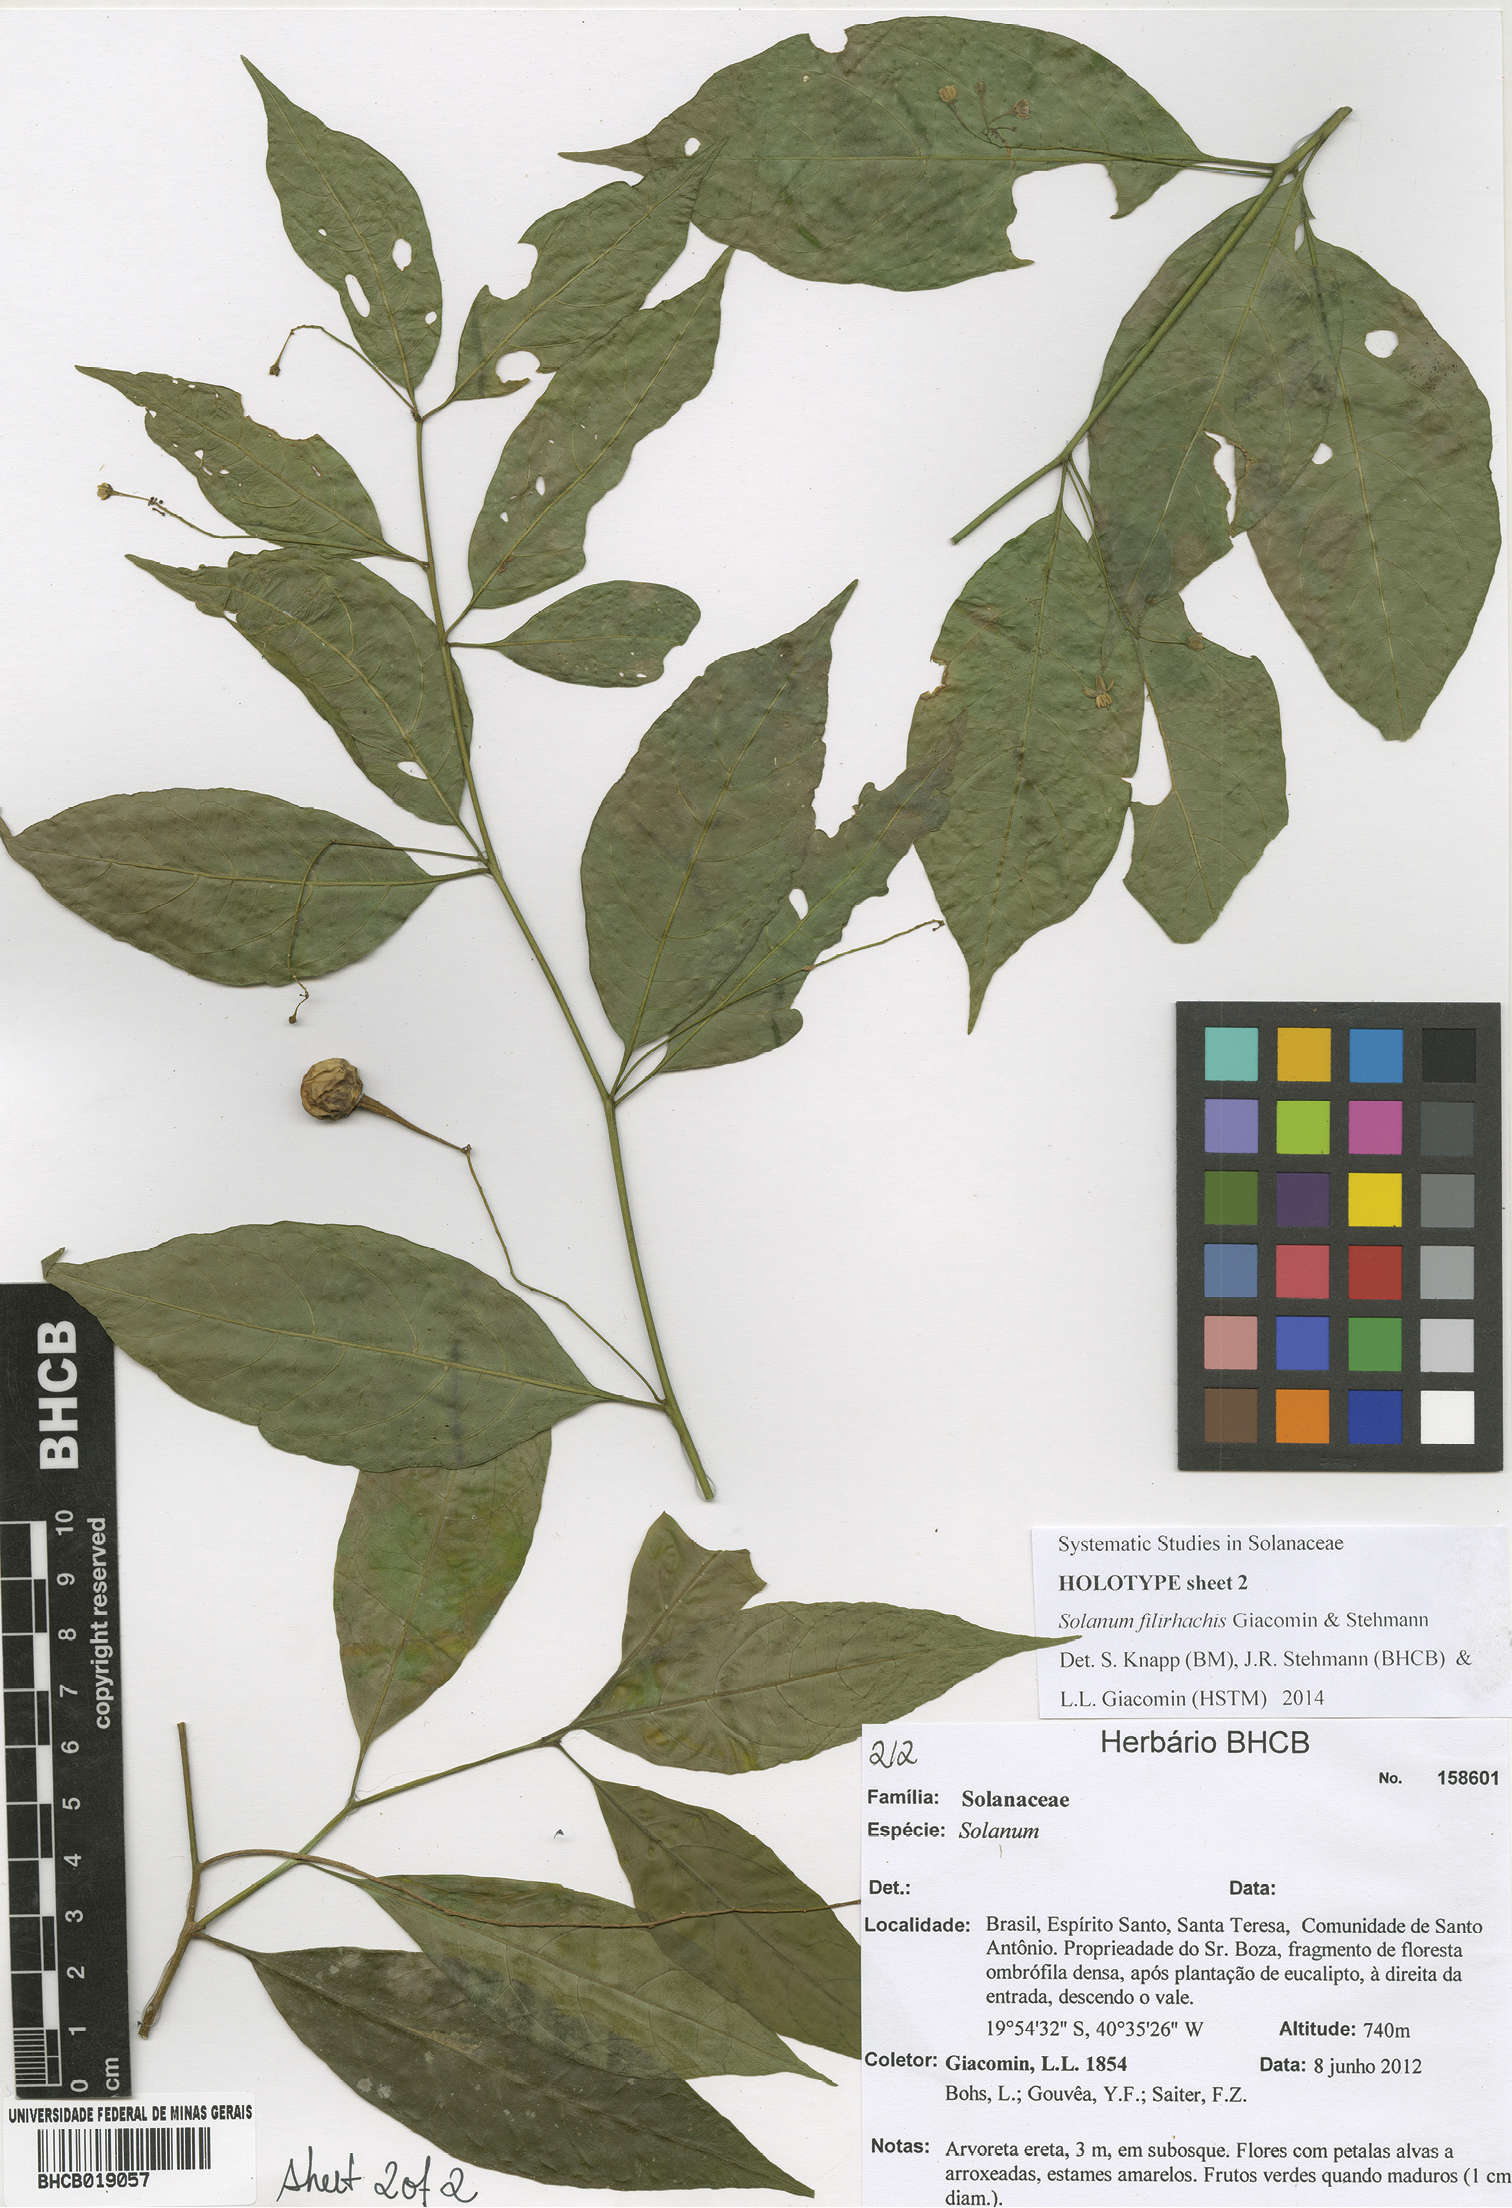 Sivun Solanum filirhachis Giacomin & Stehmann kuva